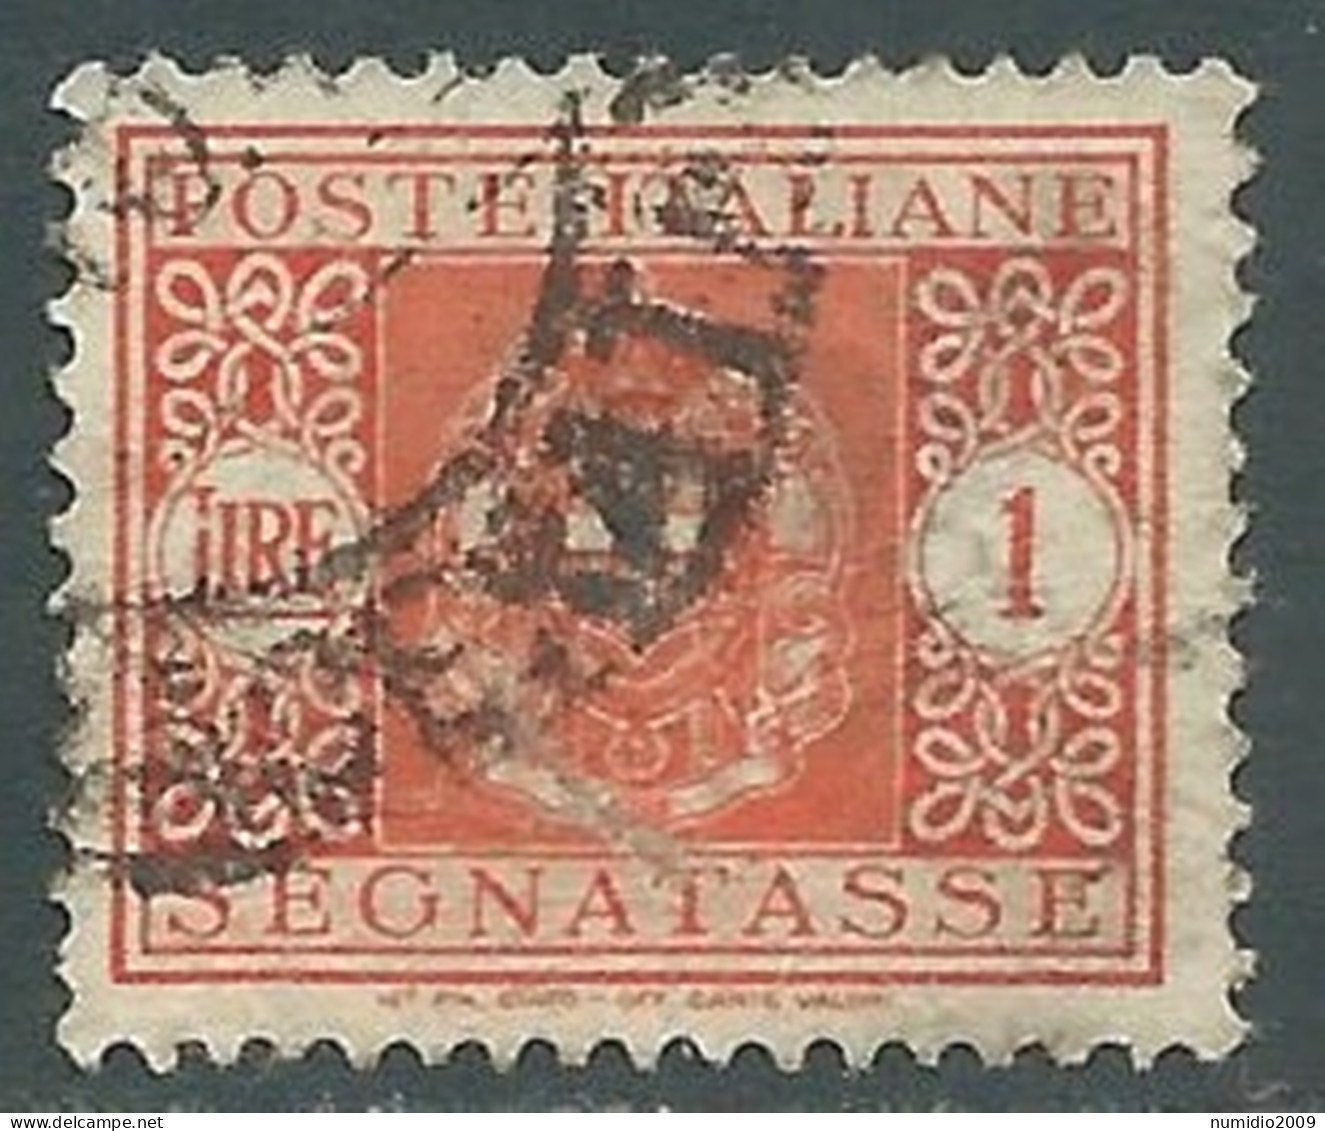 1934 REGNO SEGNATASSE USATO 1 LIRA - RE28-3 - Postage Due